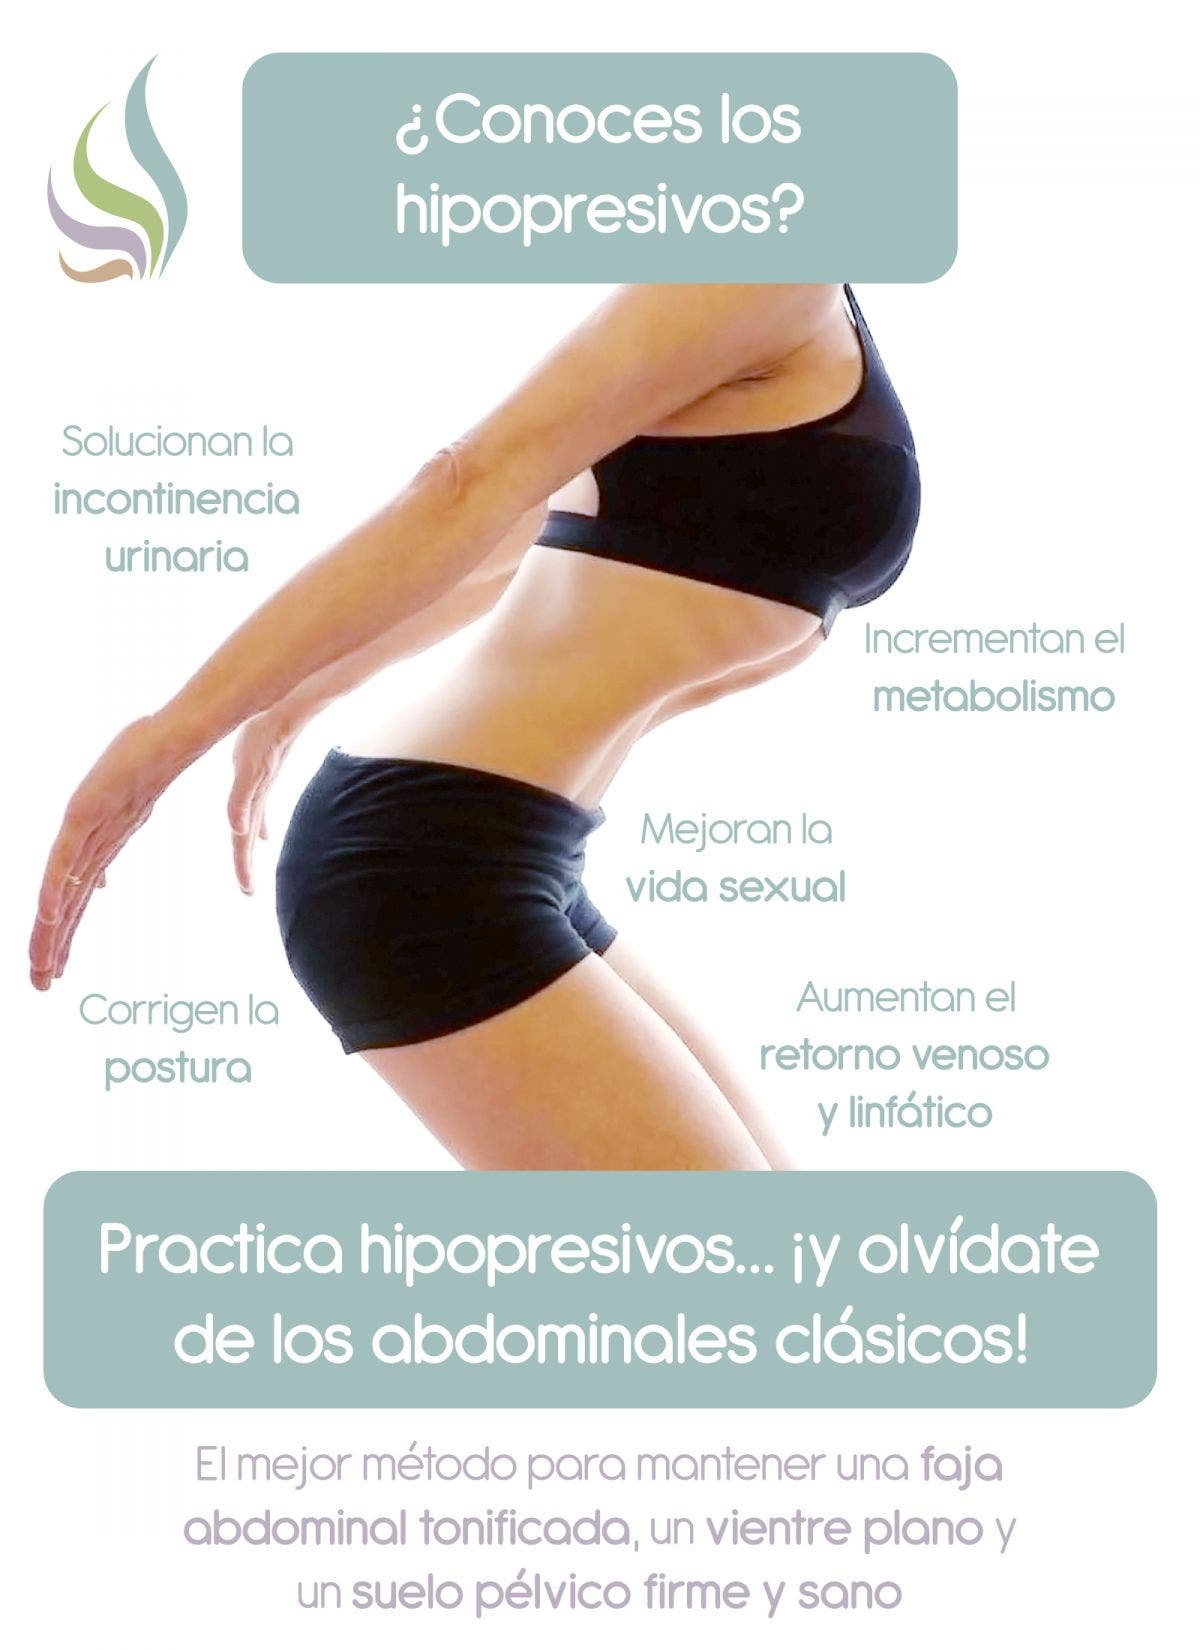 Conoce los ejercicios abdominales hipopresivos, sus beneficios, efectos e indicaciones para cuidar tu salud